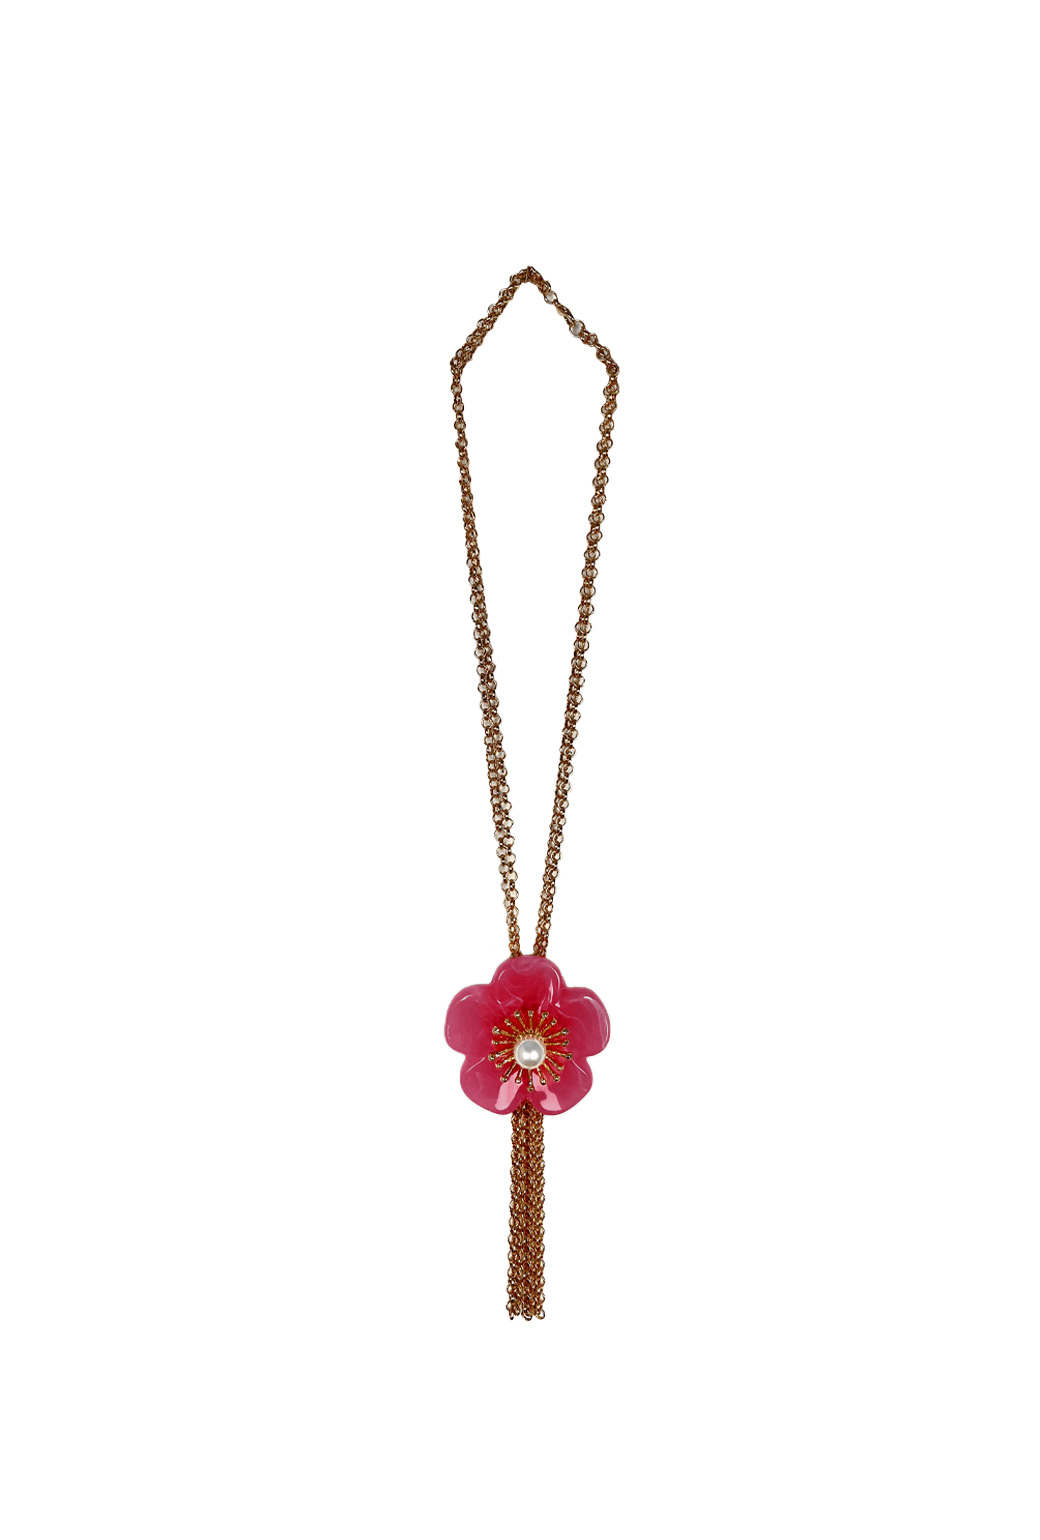 Jumbo Le Fleur Necklace - Hot Pink